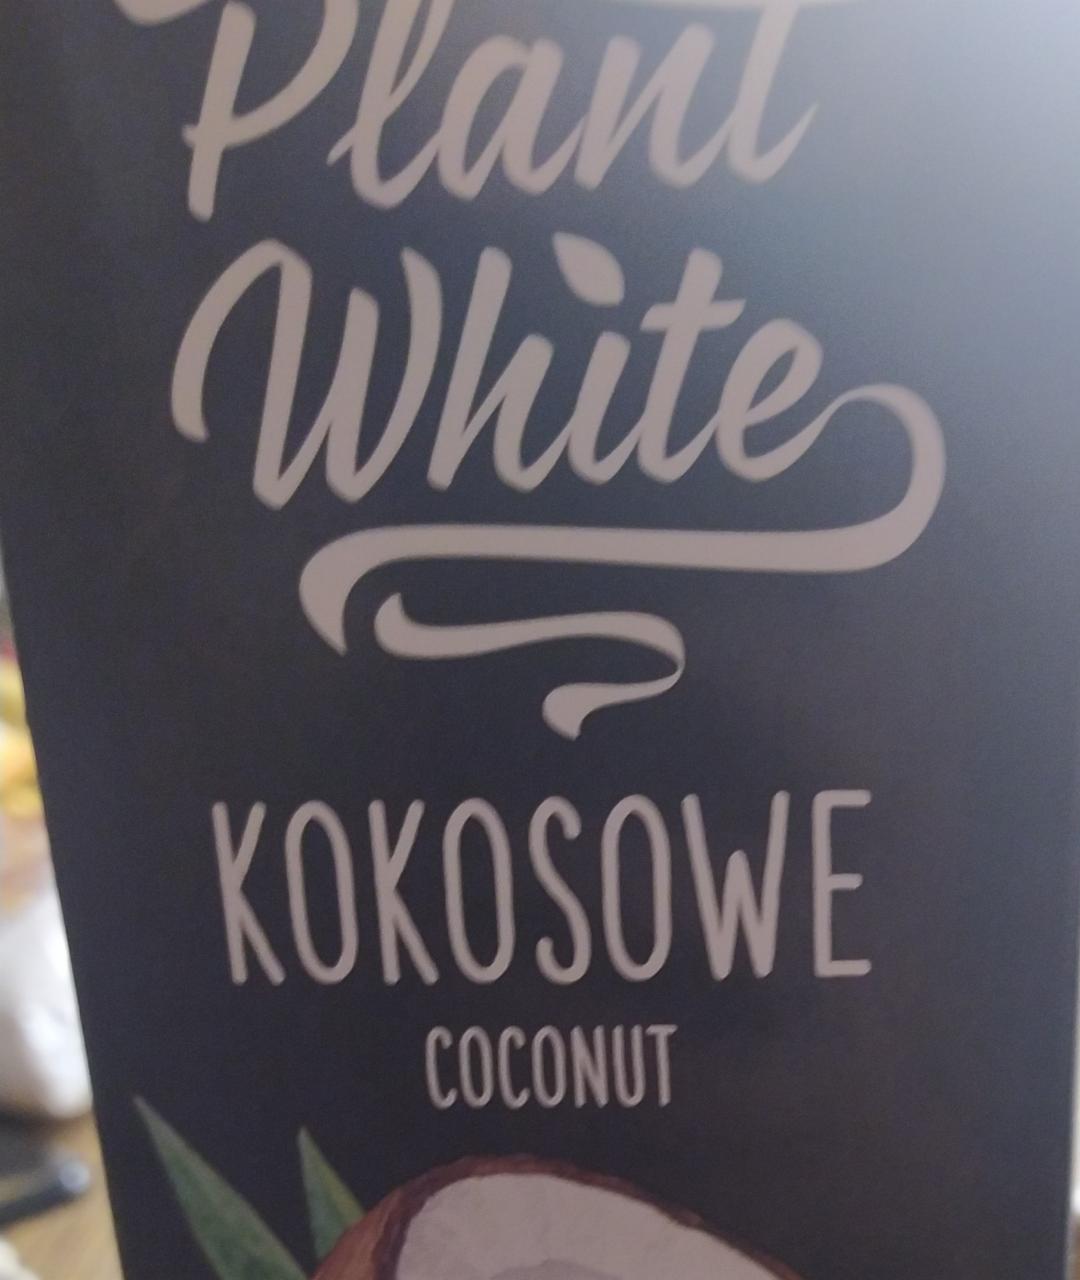 Zdjęcia - Plant White Kokosowe